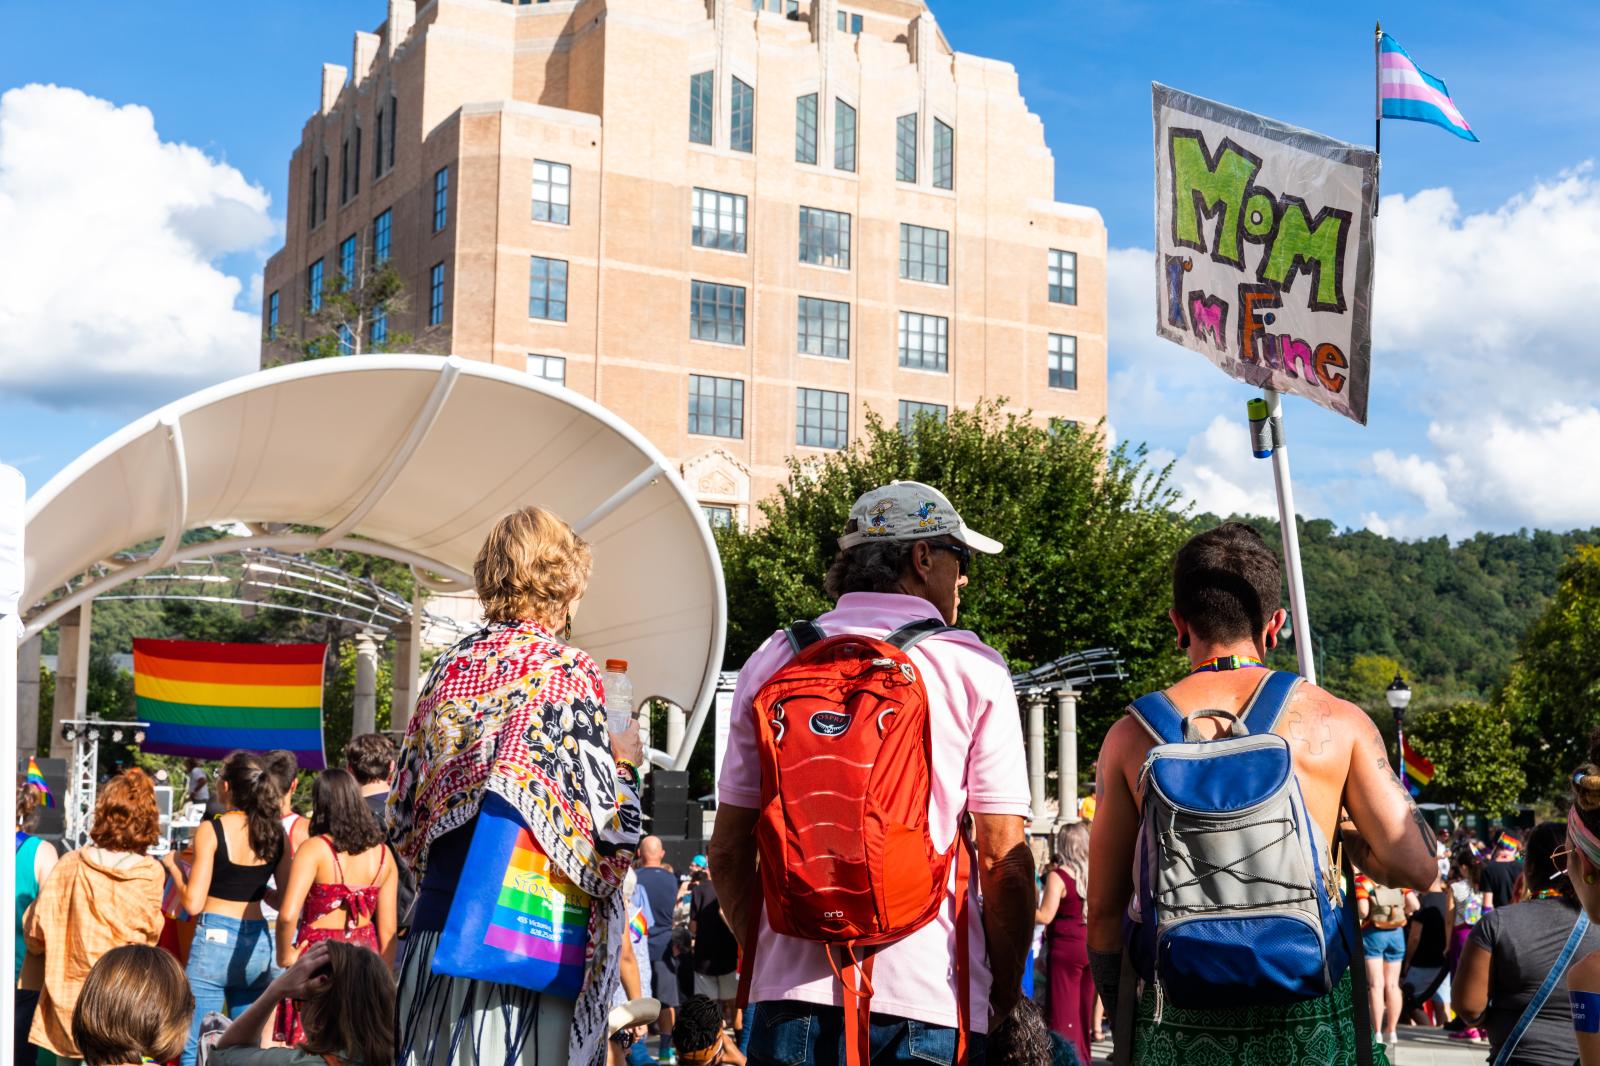 Image from Street - Asheville, NC Blue Ridge Pride Festival September 2018